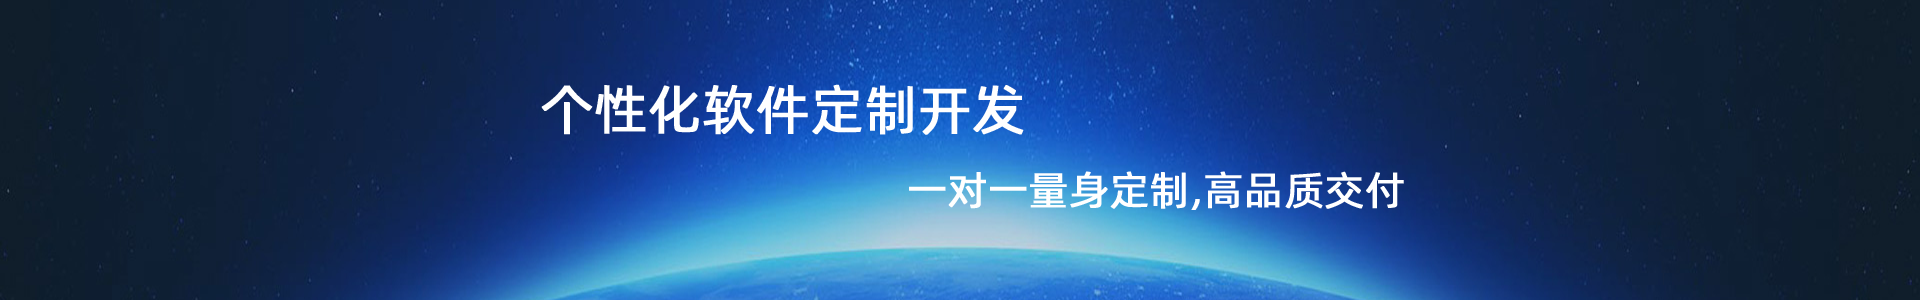 惠州软件公司 惠州小程序开发 惠州软件开发 惠州公众号开发 